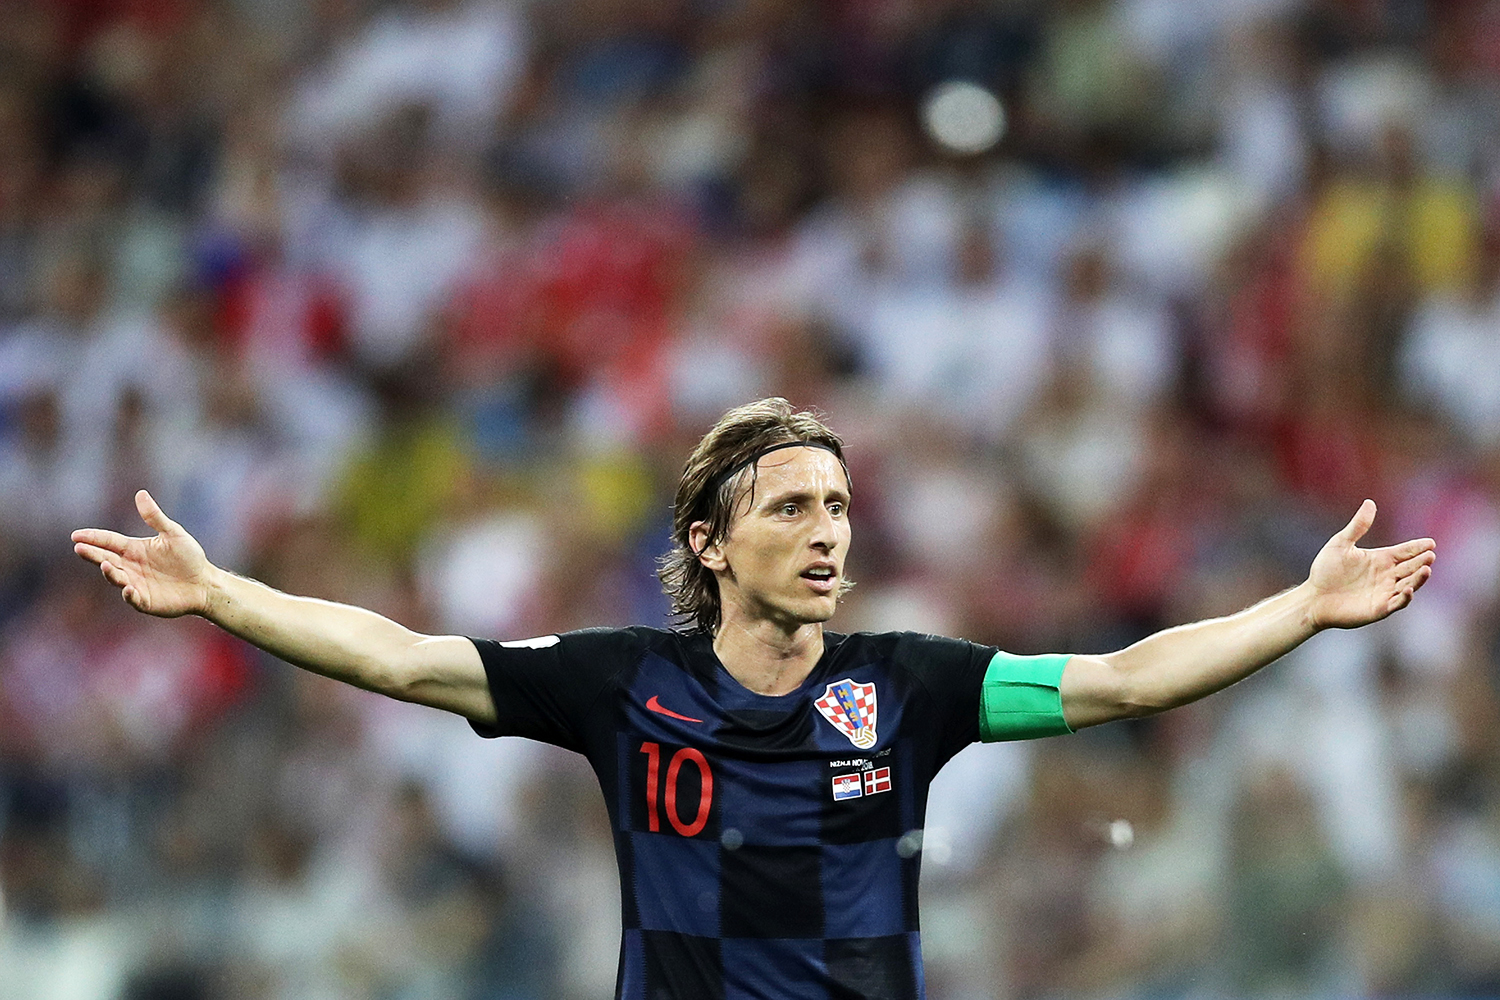 Jogador que mais se movimentou em campo, Modric é Bola de Ouro da Copa